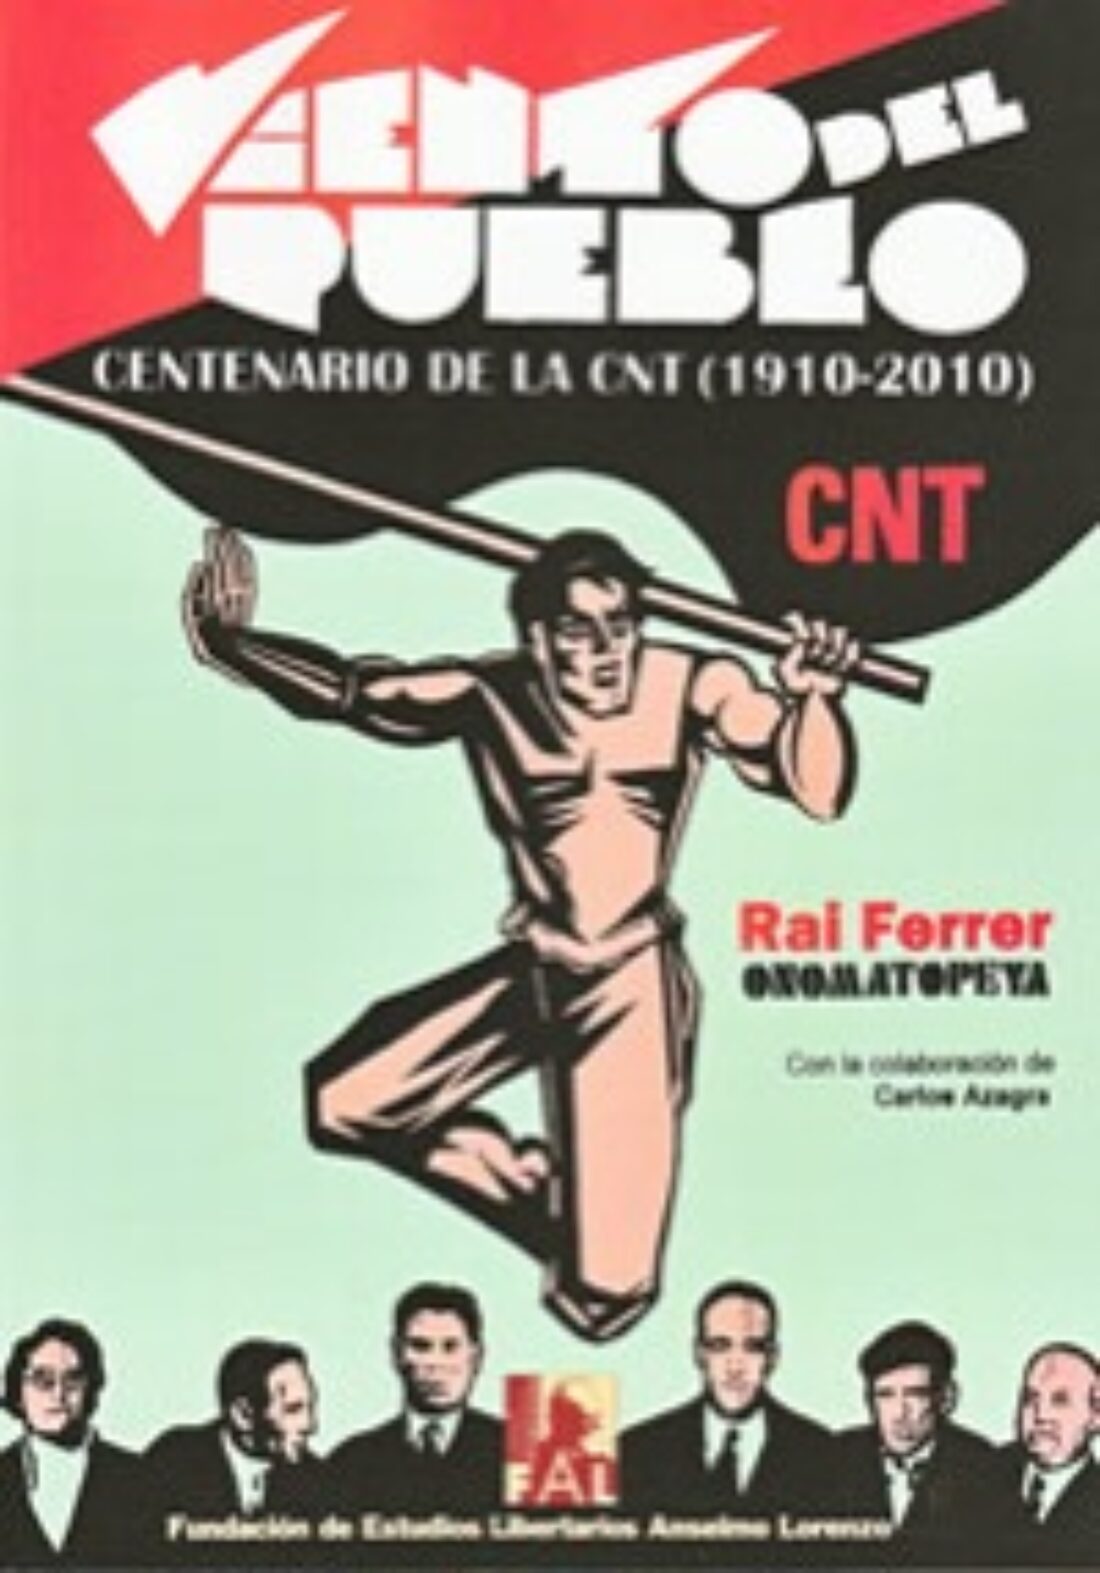 21 mayo, Madrid : Presentación ’Viento del pueblo. Centenario de la CNT (1910-2010)’